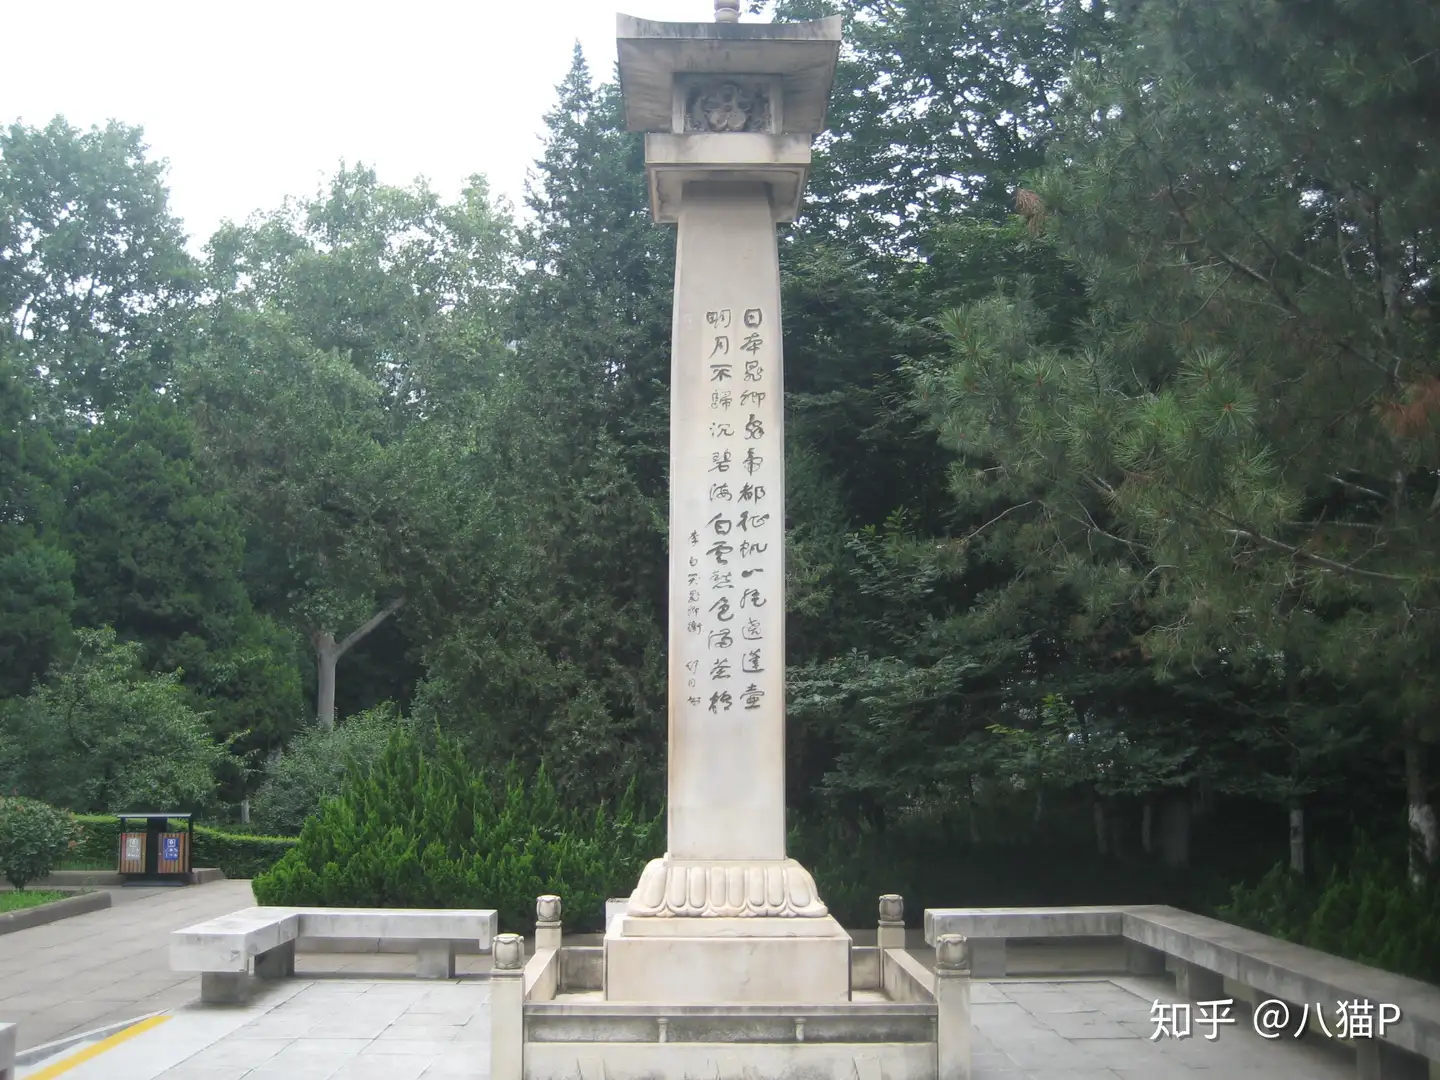 西安兴庆公园阿倍仲麻吕纪念碑及碑文- 知乎